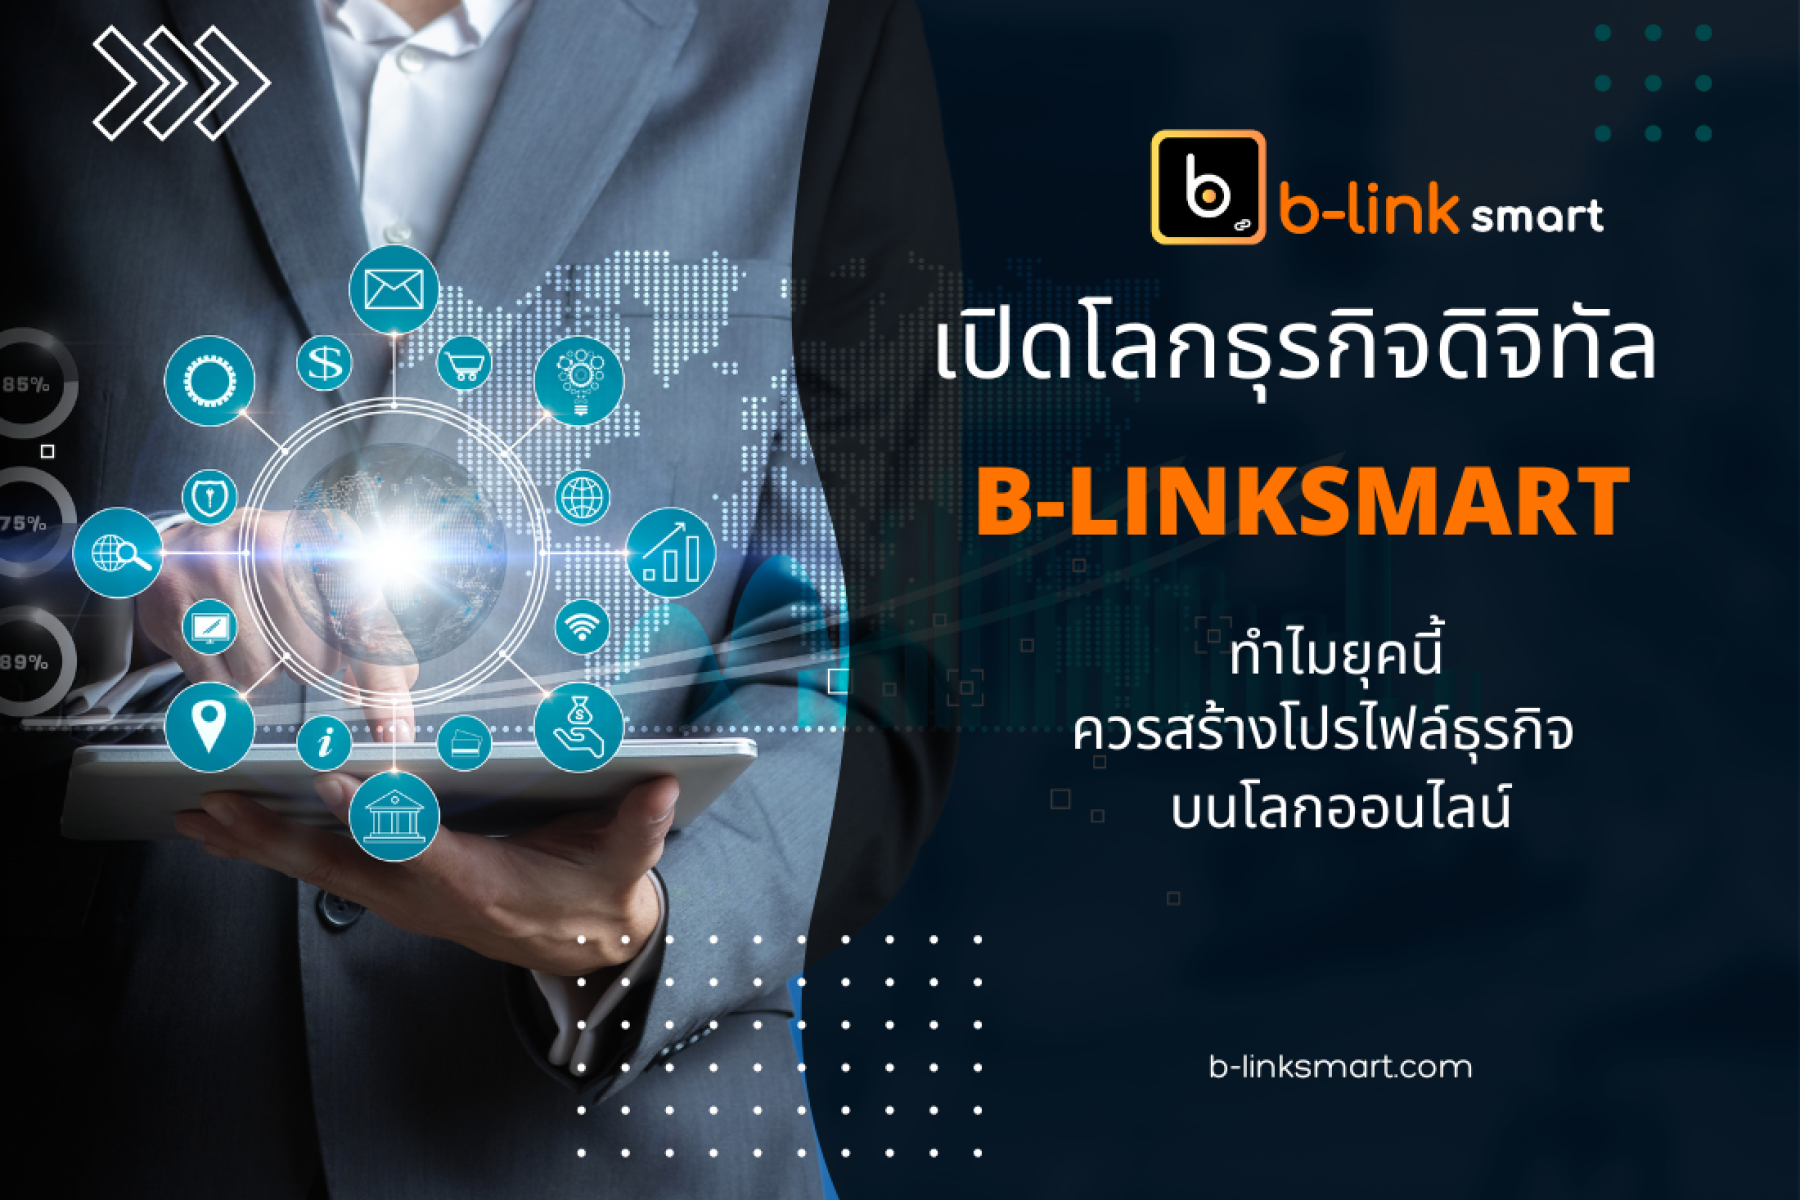 เปิดโลกธุรกิจดิจิทัลกับ B-linksmart เชื่อมลูกค้าจากโลกออนไลน์เข้าหาธุรกิจคุณ